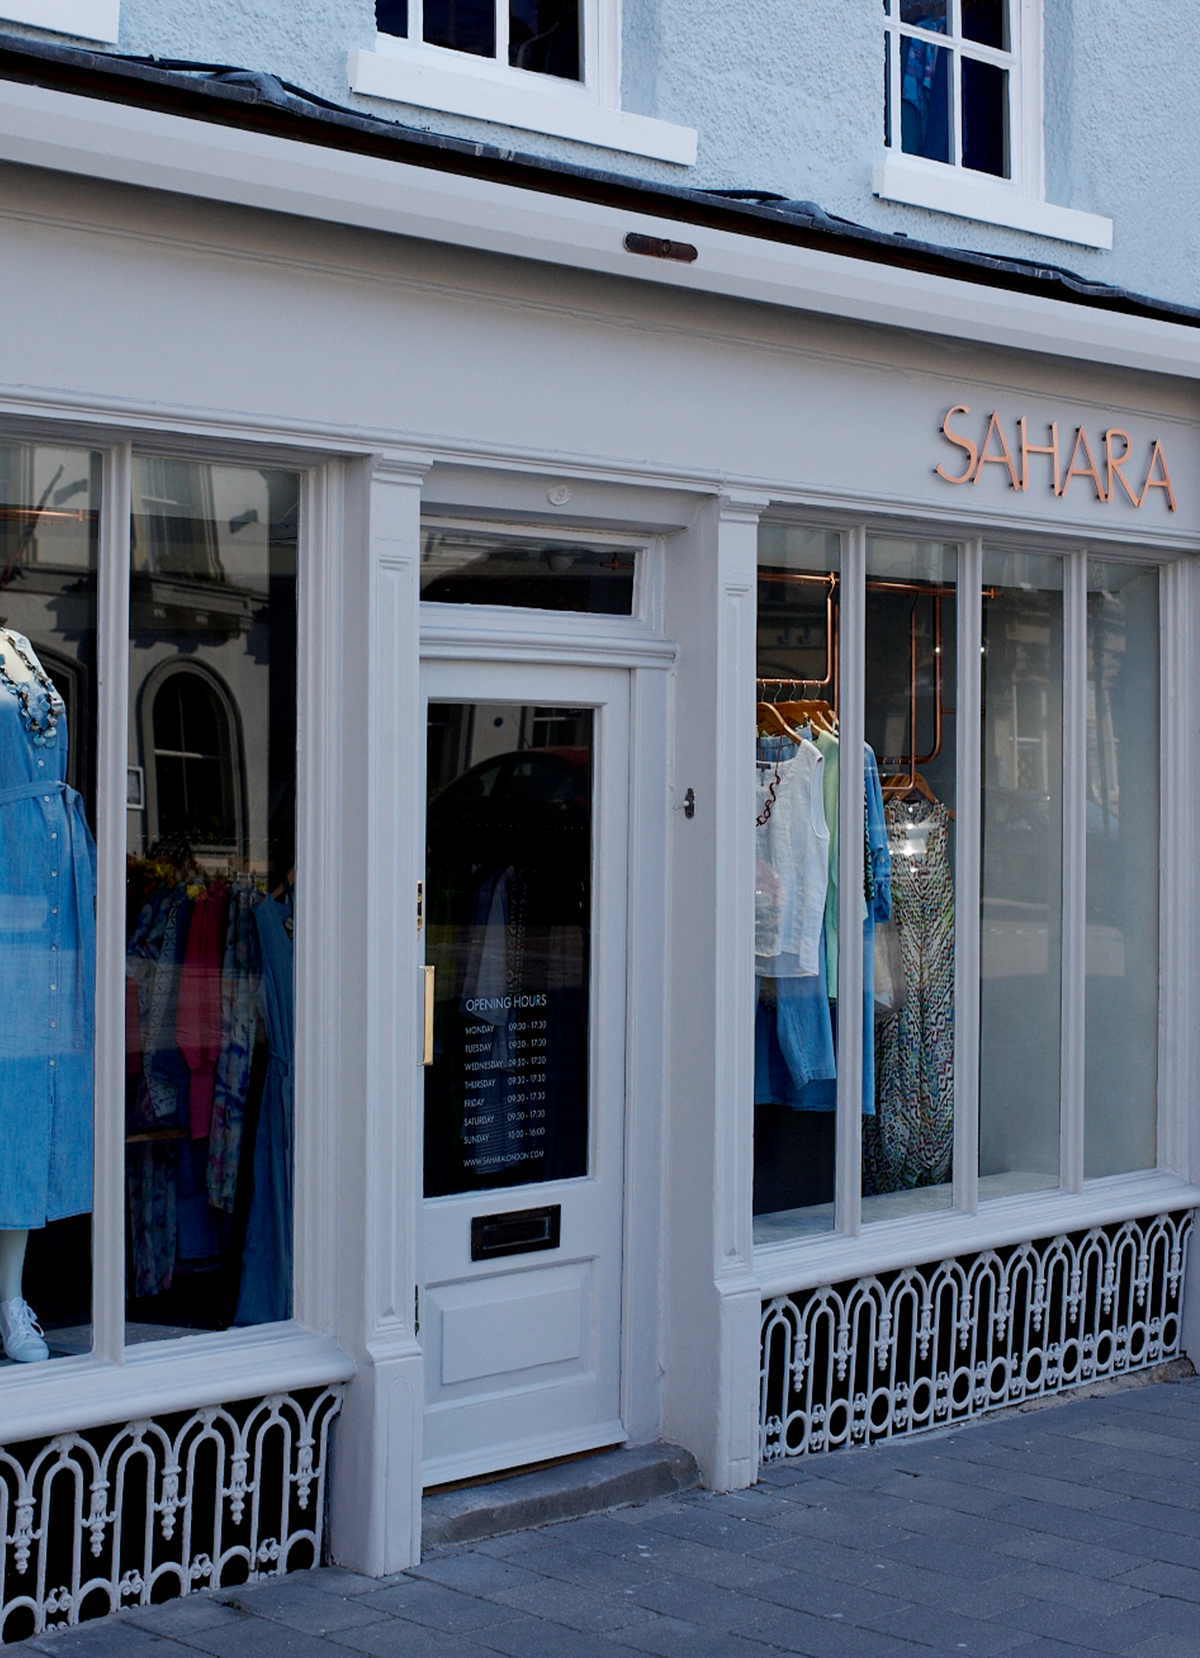 sarara shop front